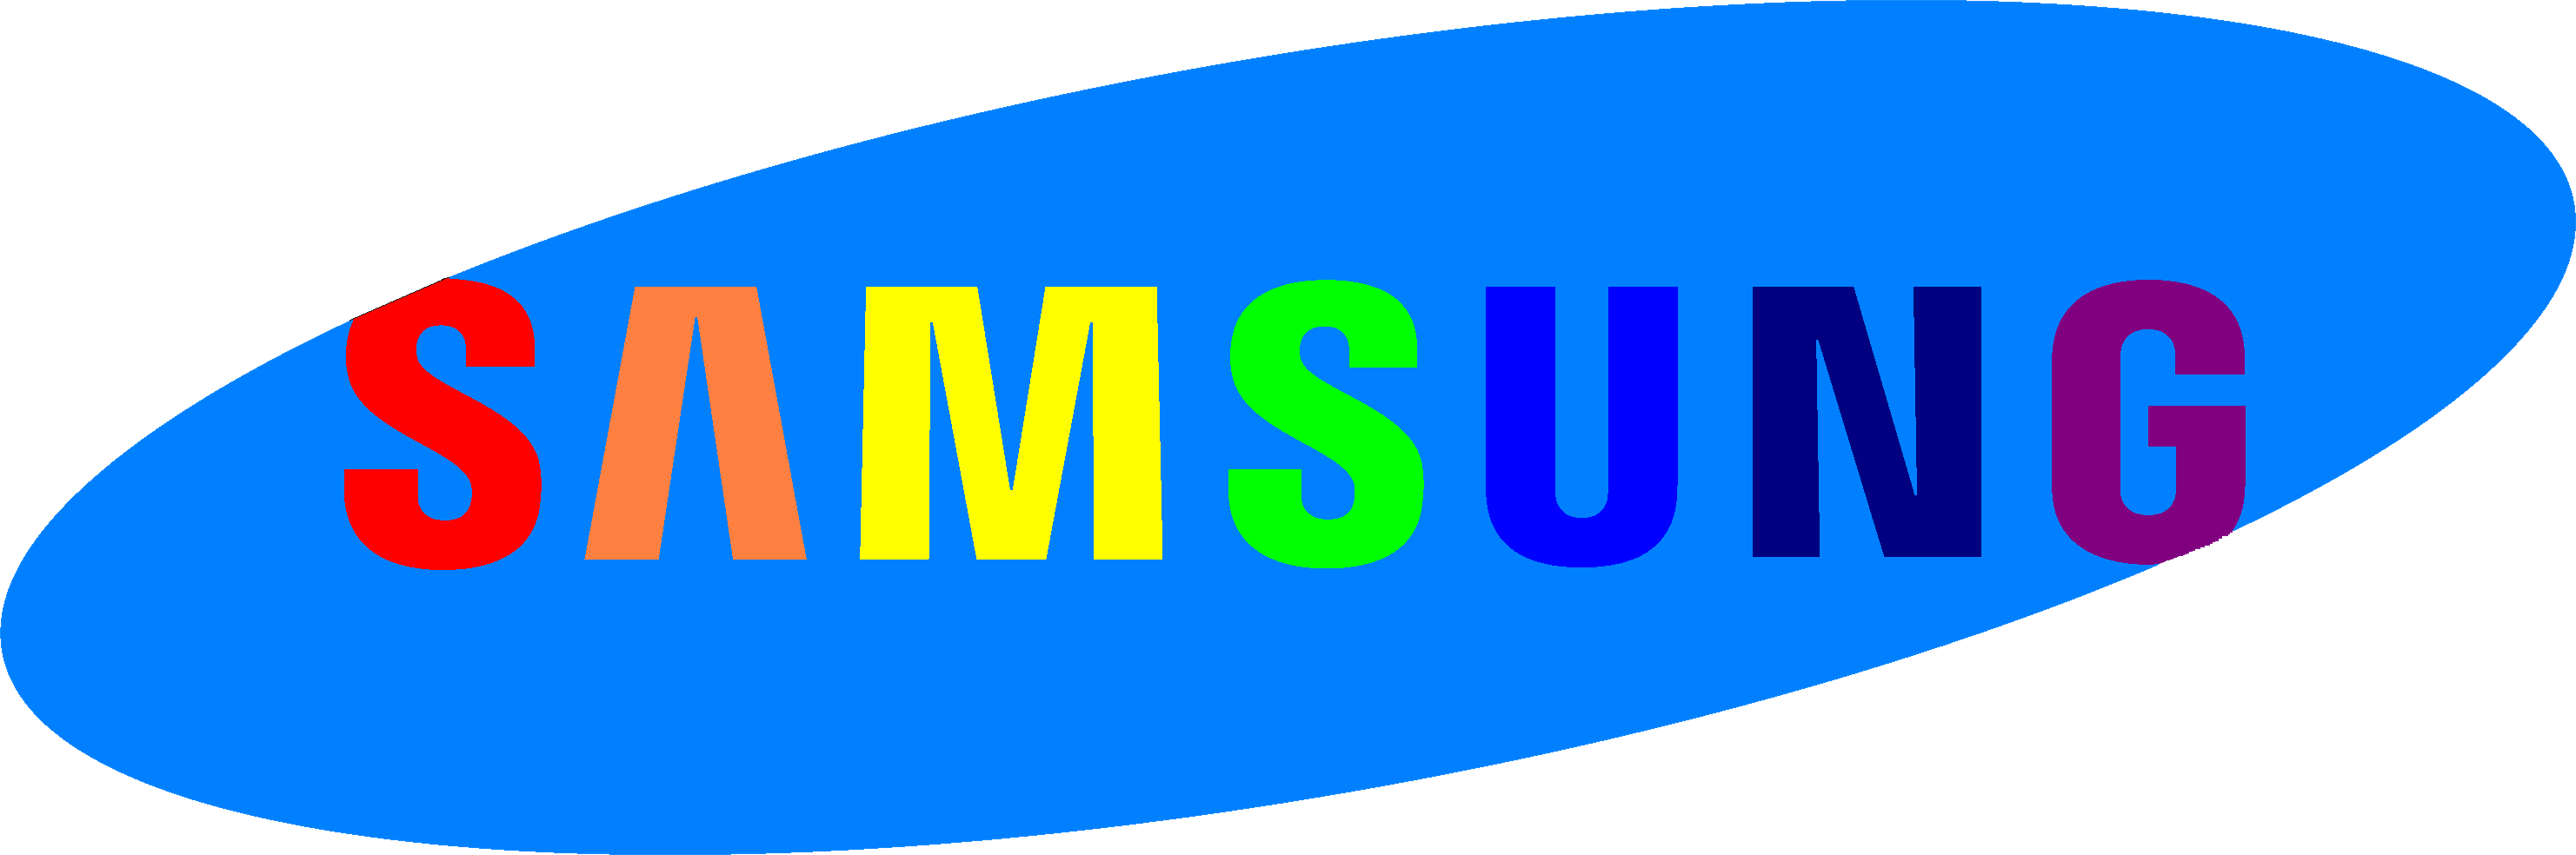 Samsung logo PNG images 